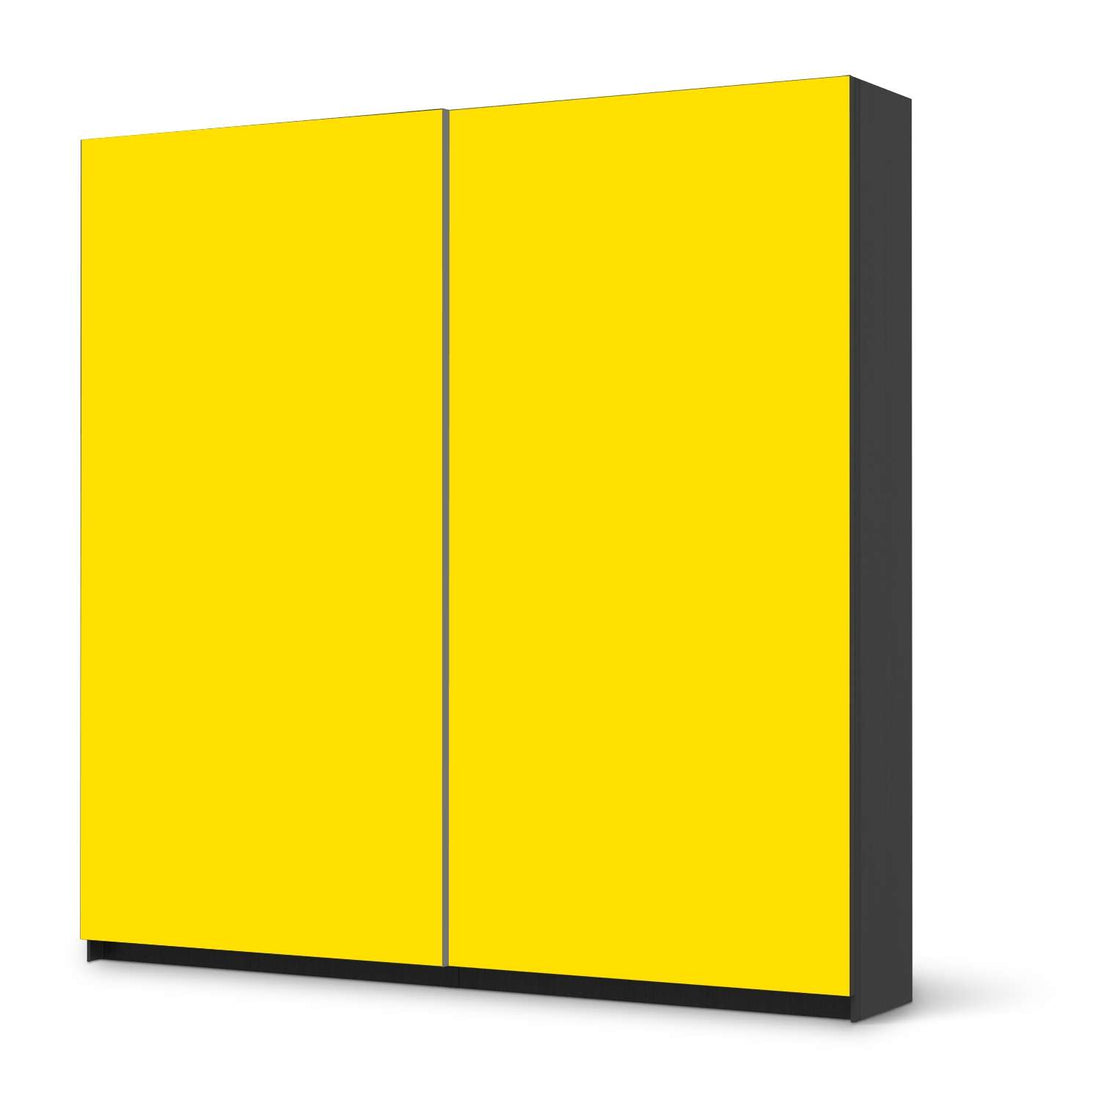 Möbel Klebefolie Gelb Dark - IKEA Pax Schrank 201 cm Höhe - Schiebetür - schwarz